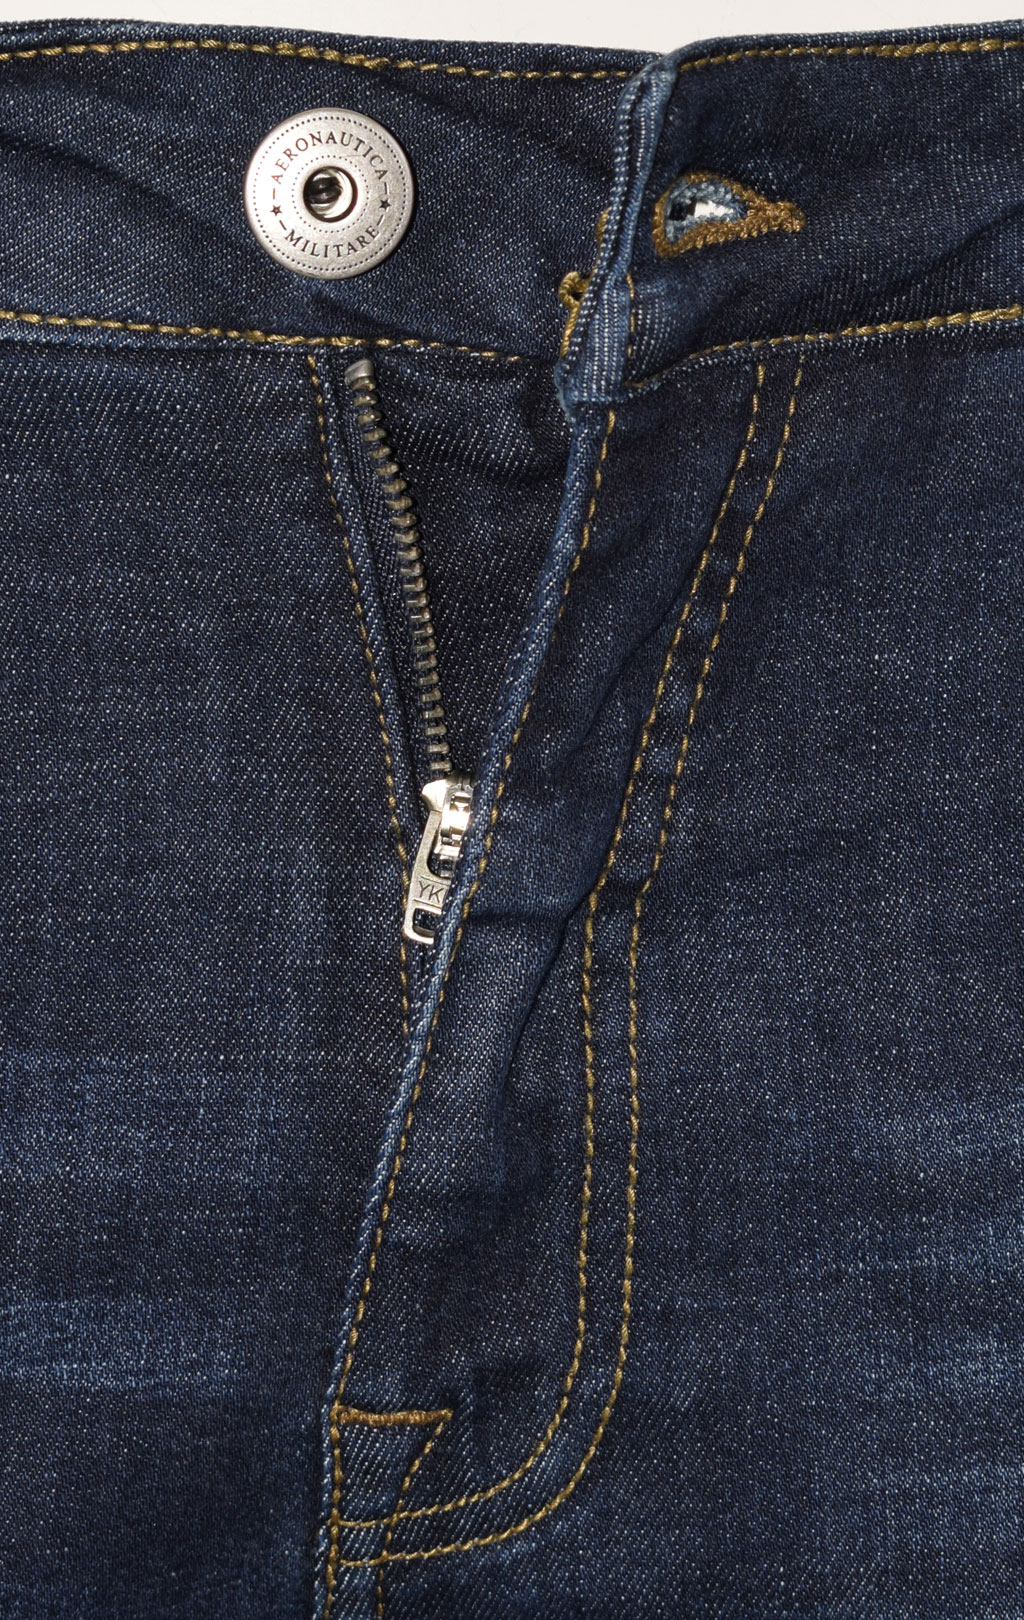 Джинсы AERONAUTICA MILITARE FW 22/23/PT jeans lavaggio scuro (PJ 192) 